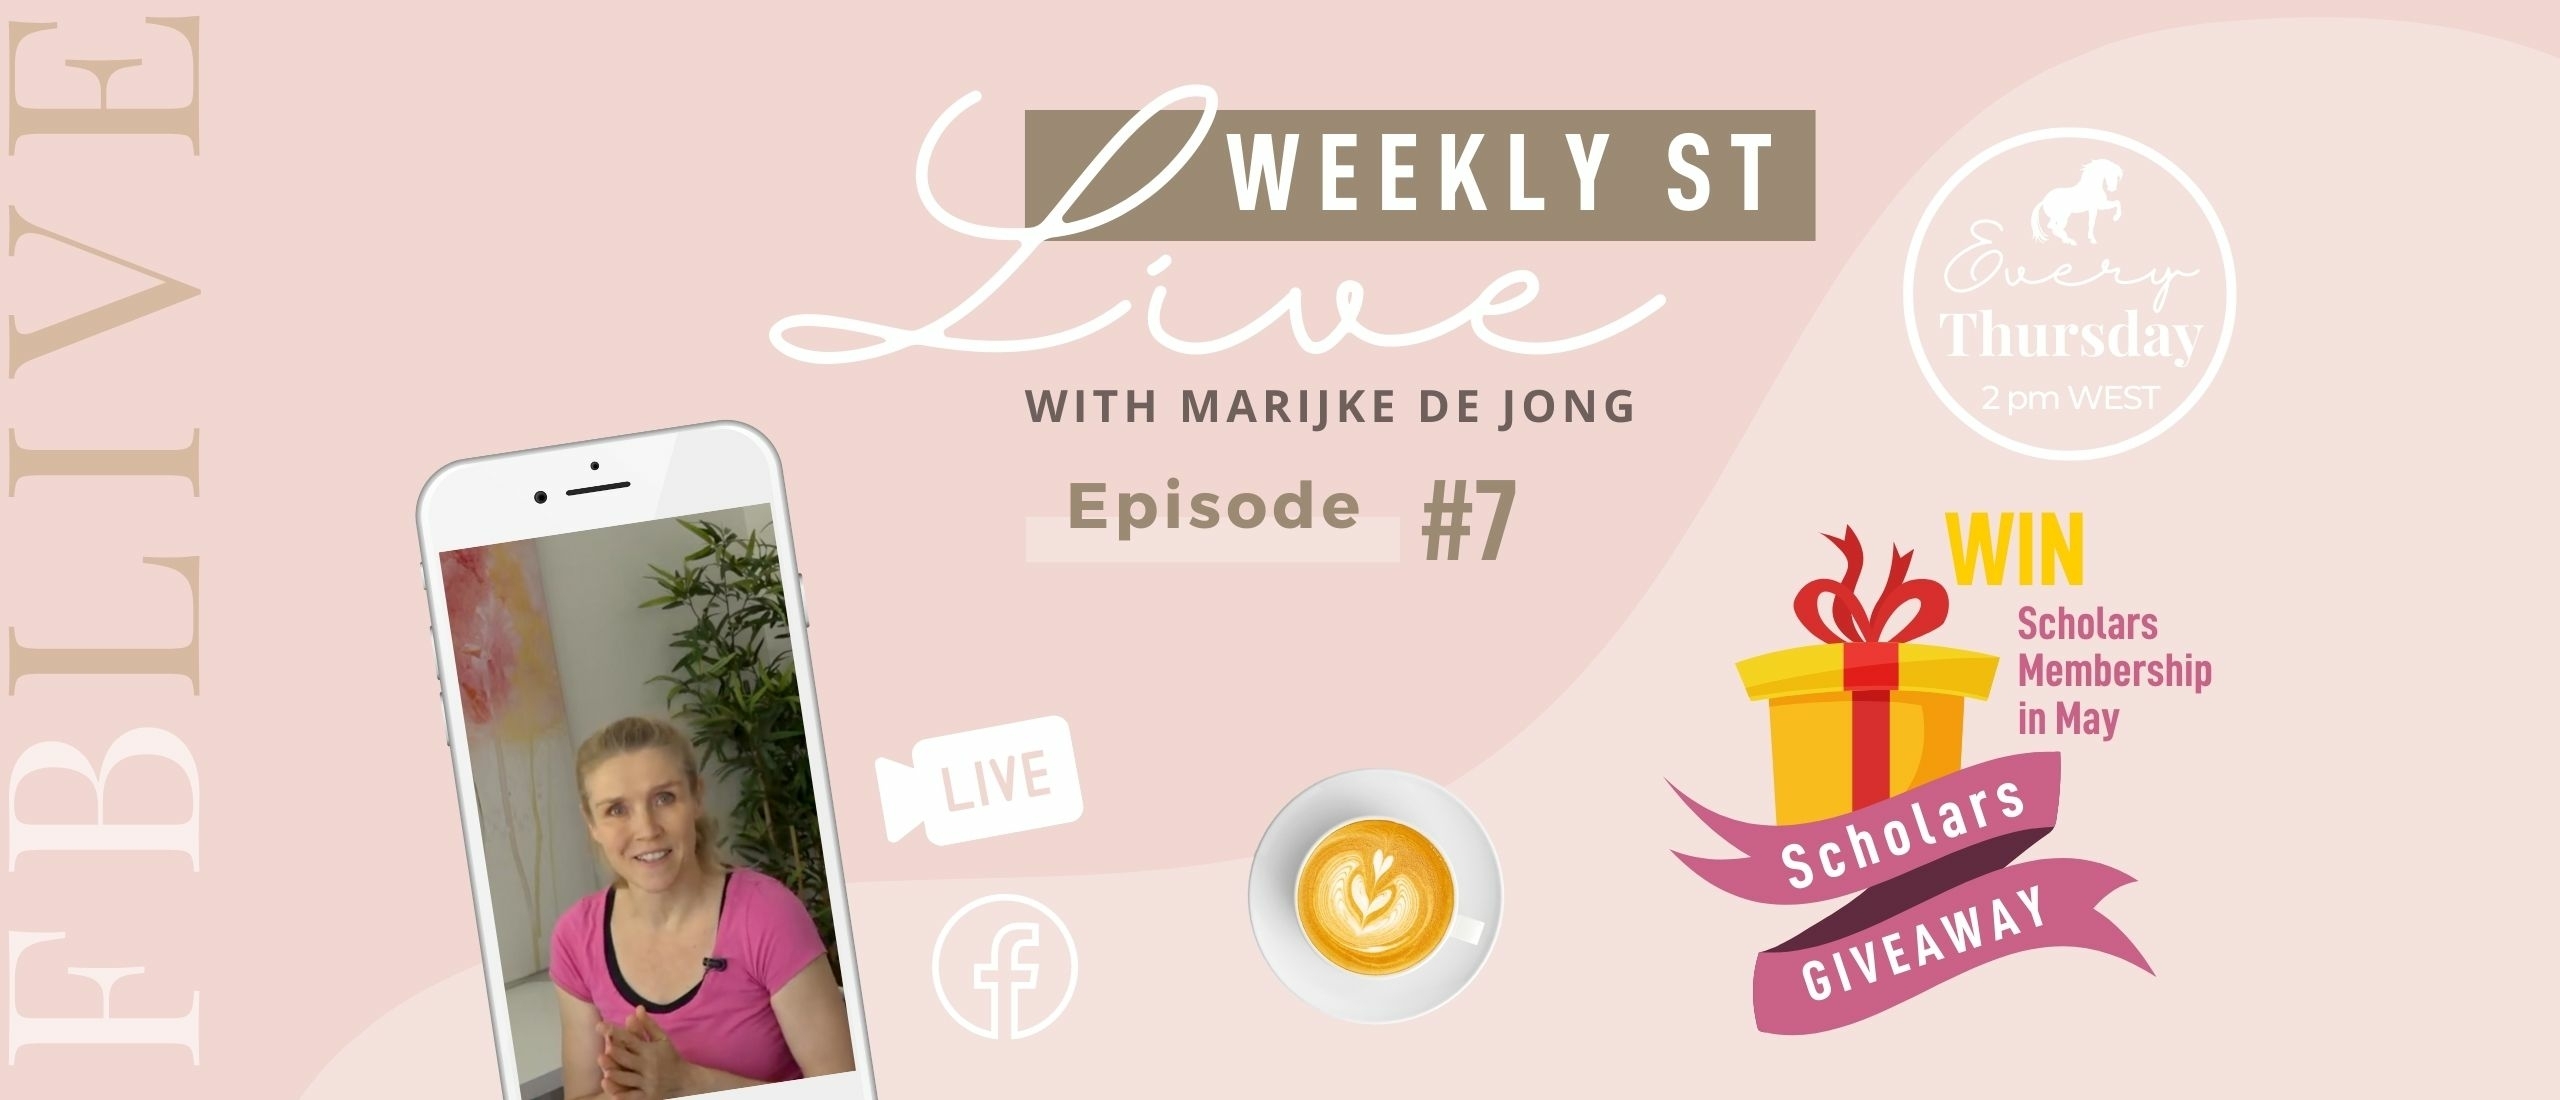 Weekly ST #7 | Marijke de Jong Live